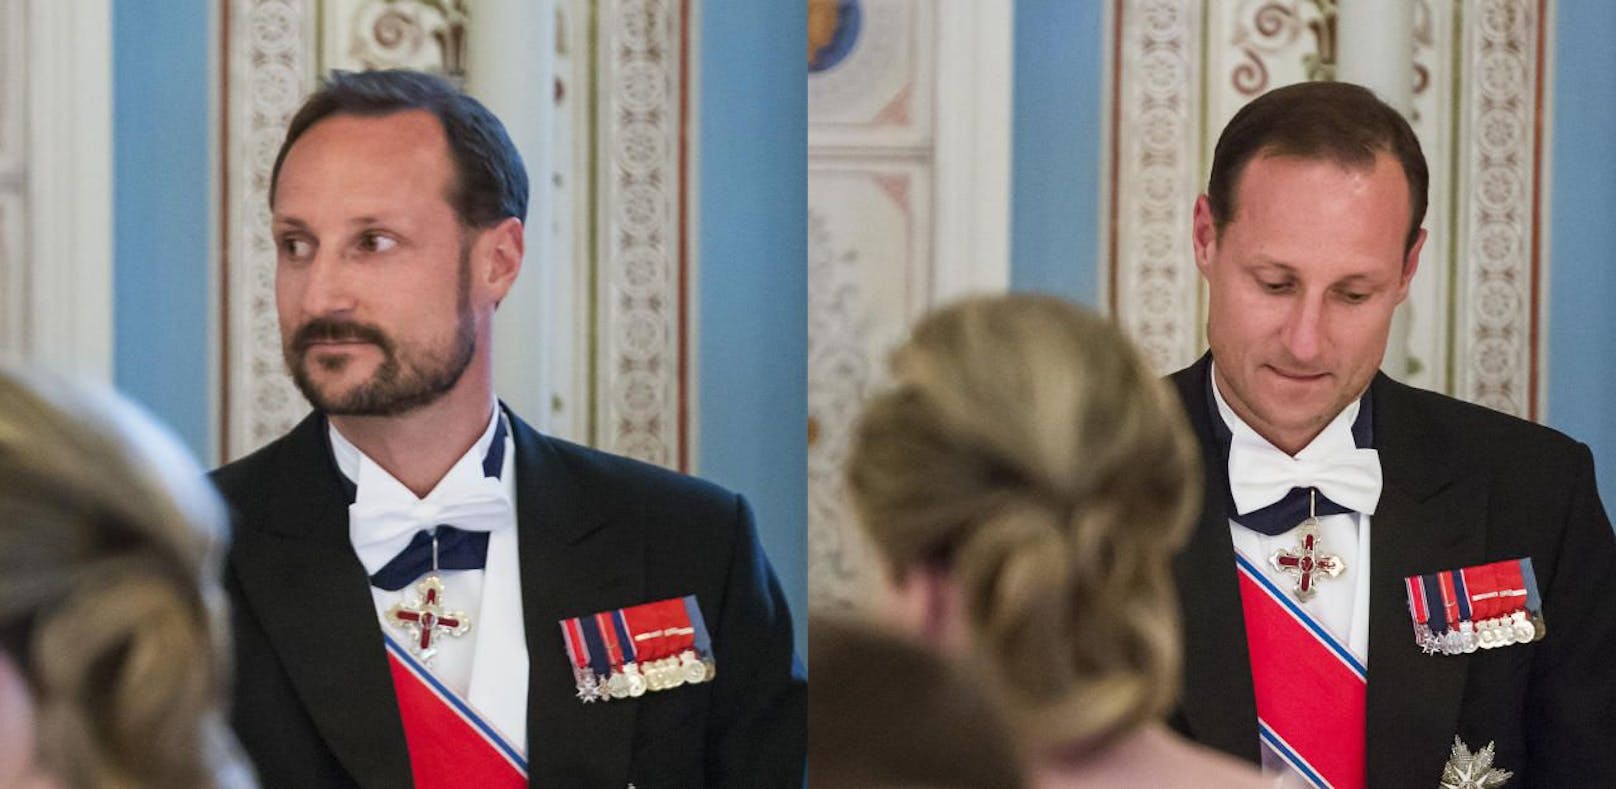 Zweimal Kronprinz Haakon - aber etwas ist anders